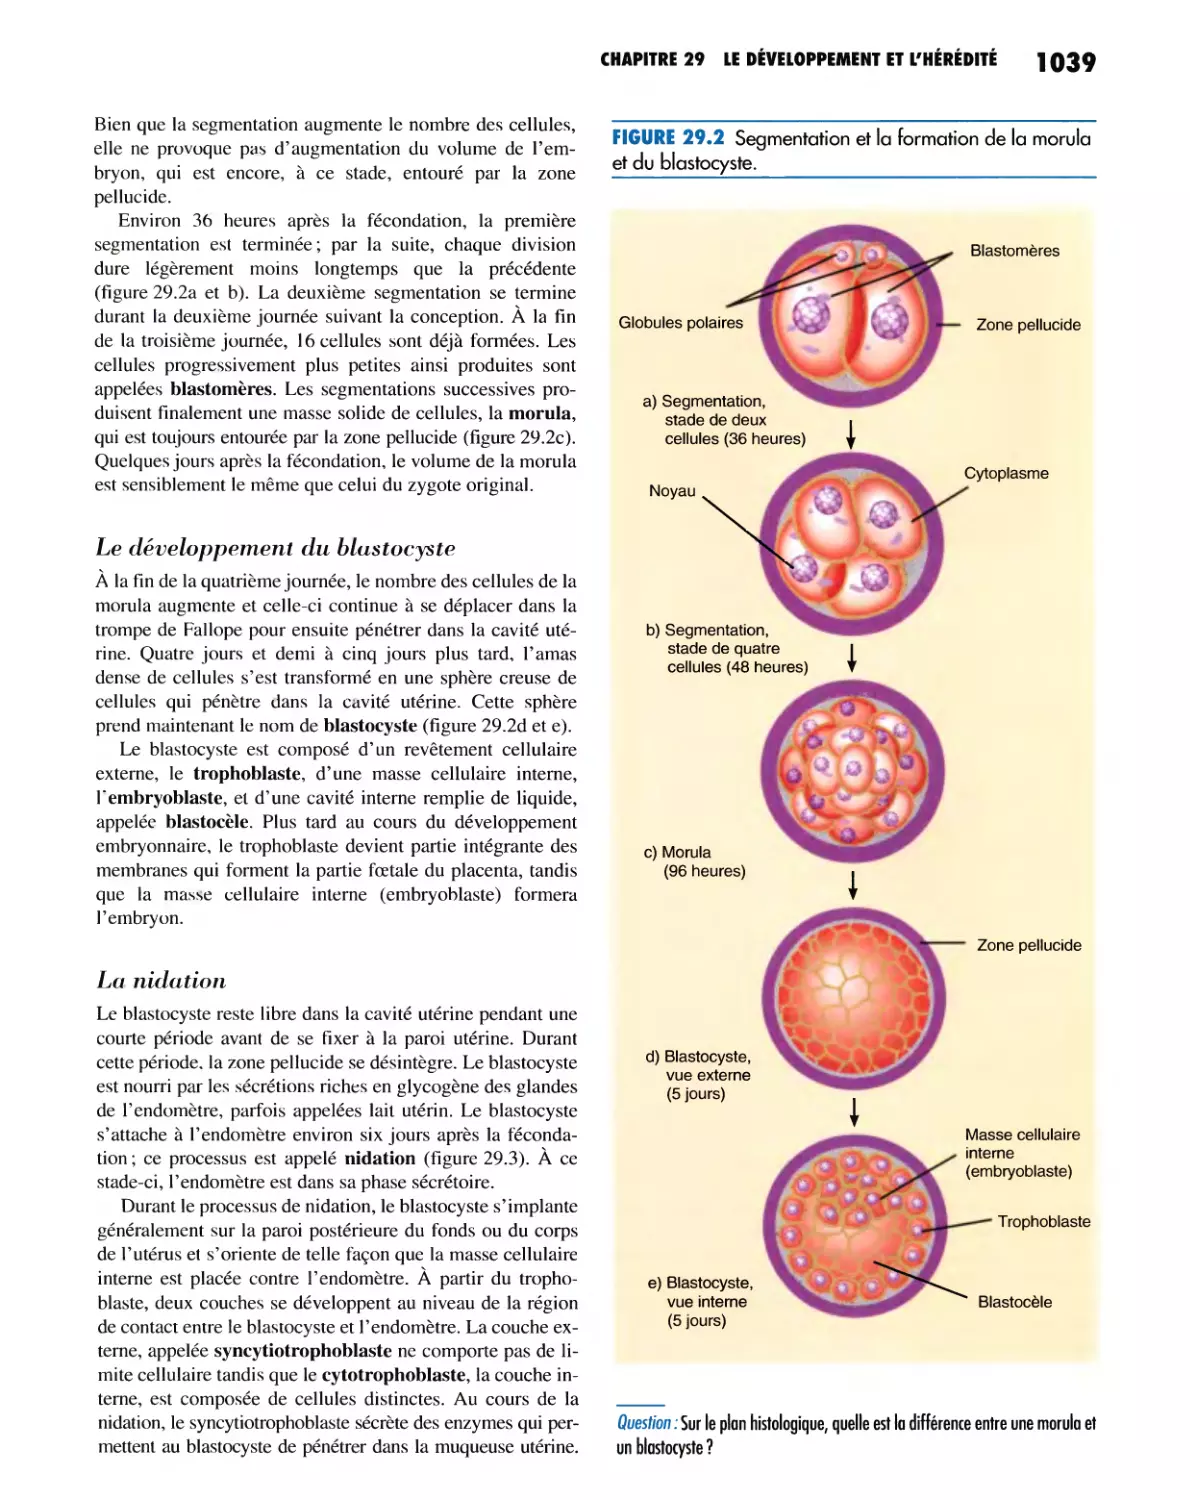 Le développement du blastocyste
La nidation